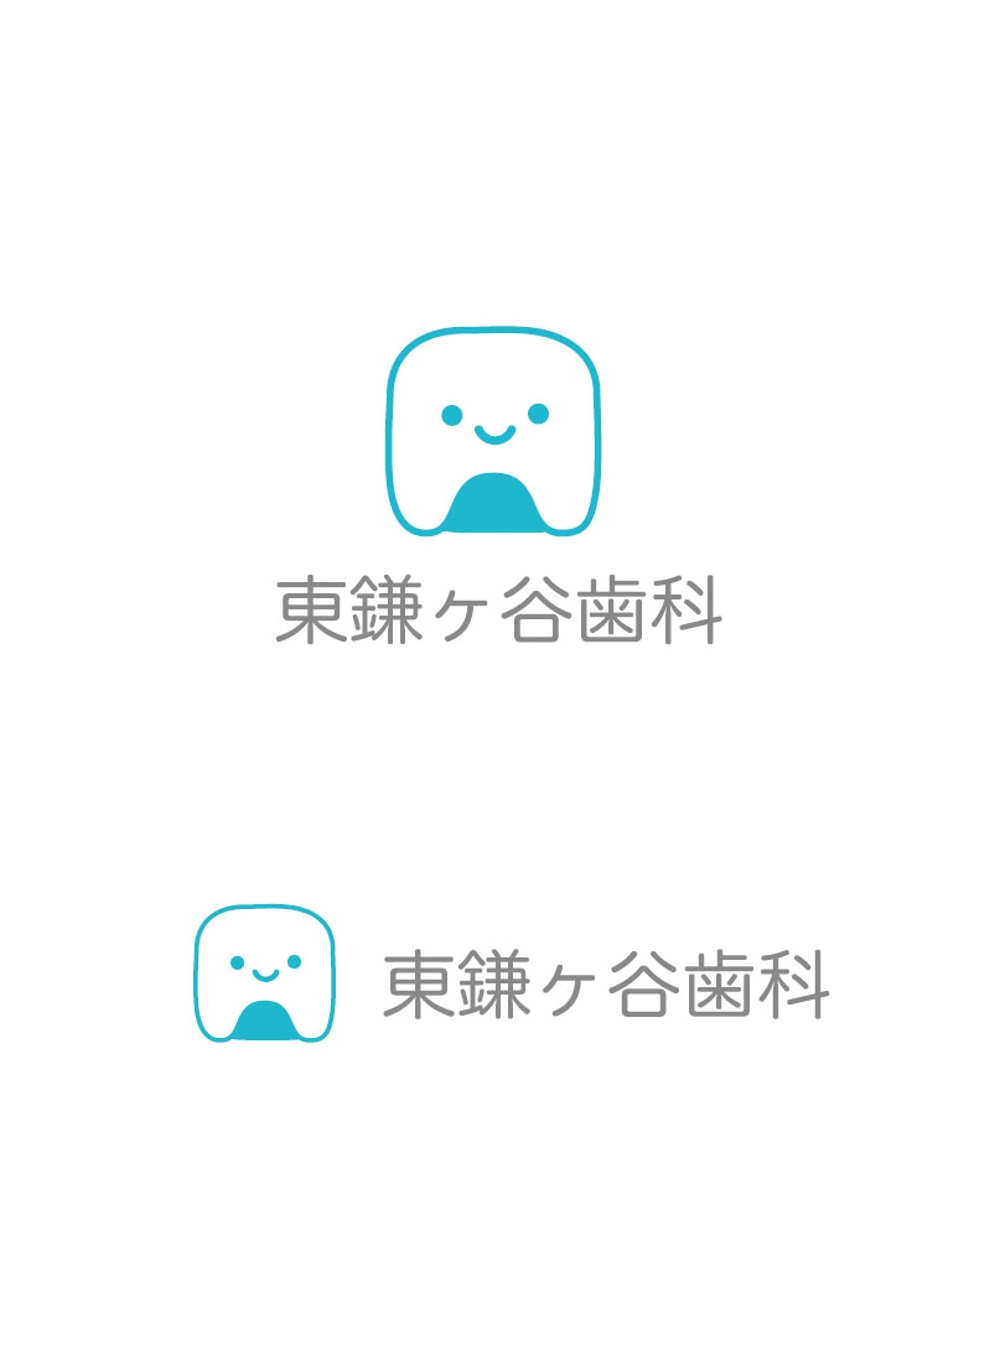 歯科医院「東鎌ヶ谷歯科」のロゴ